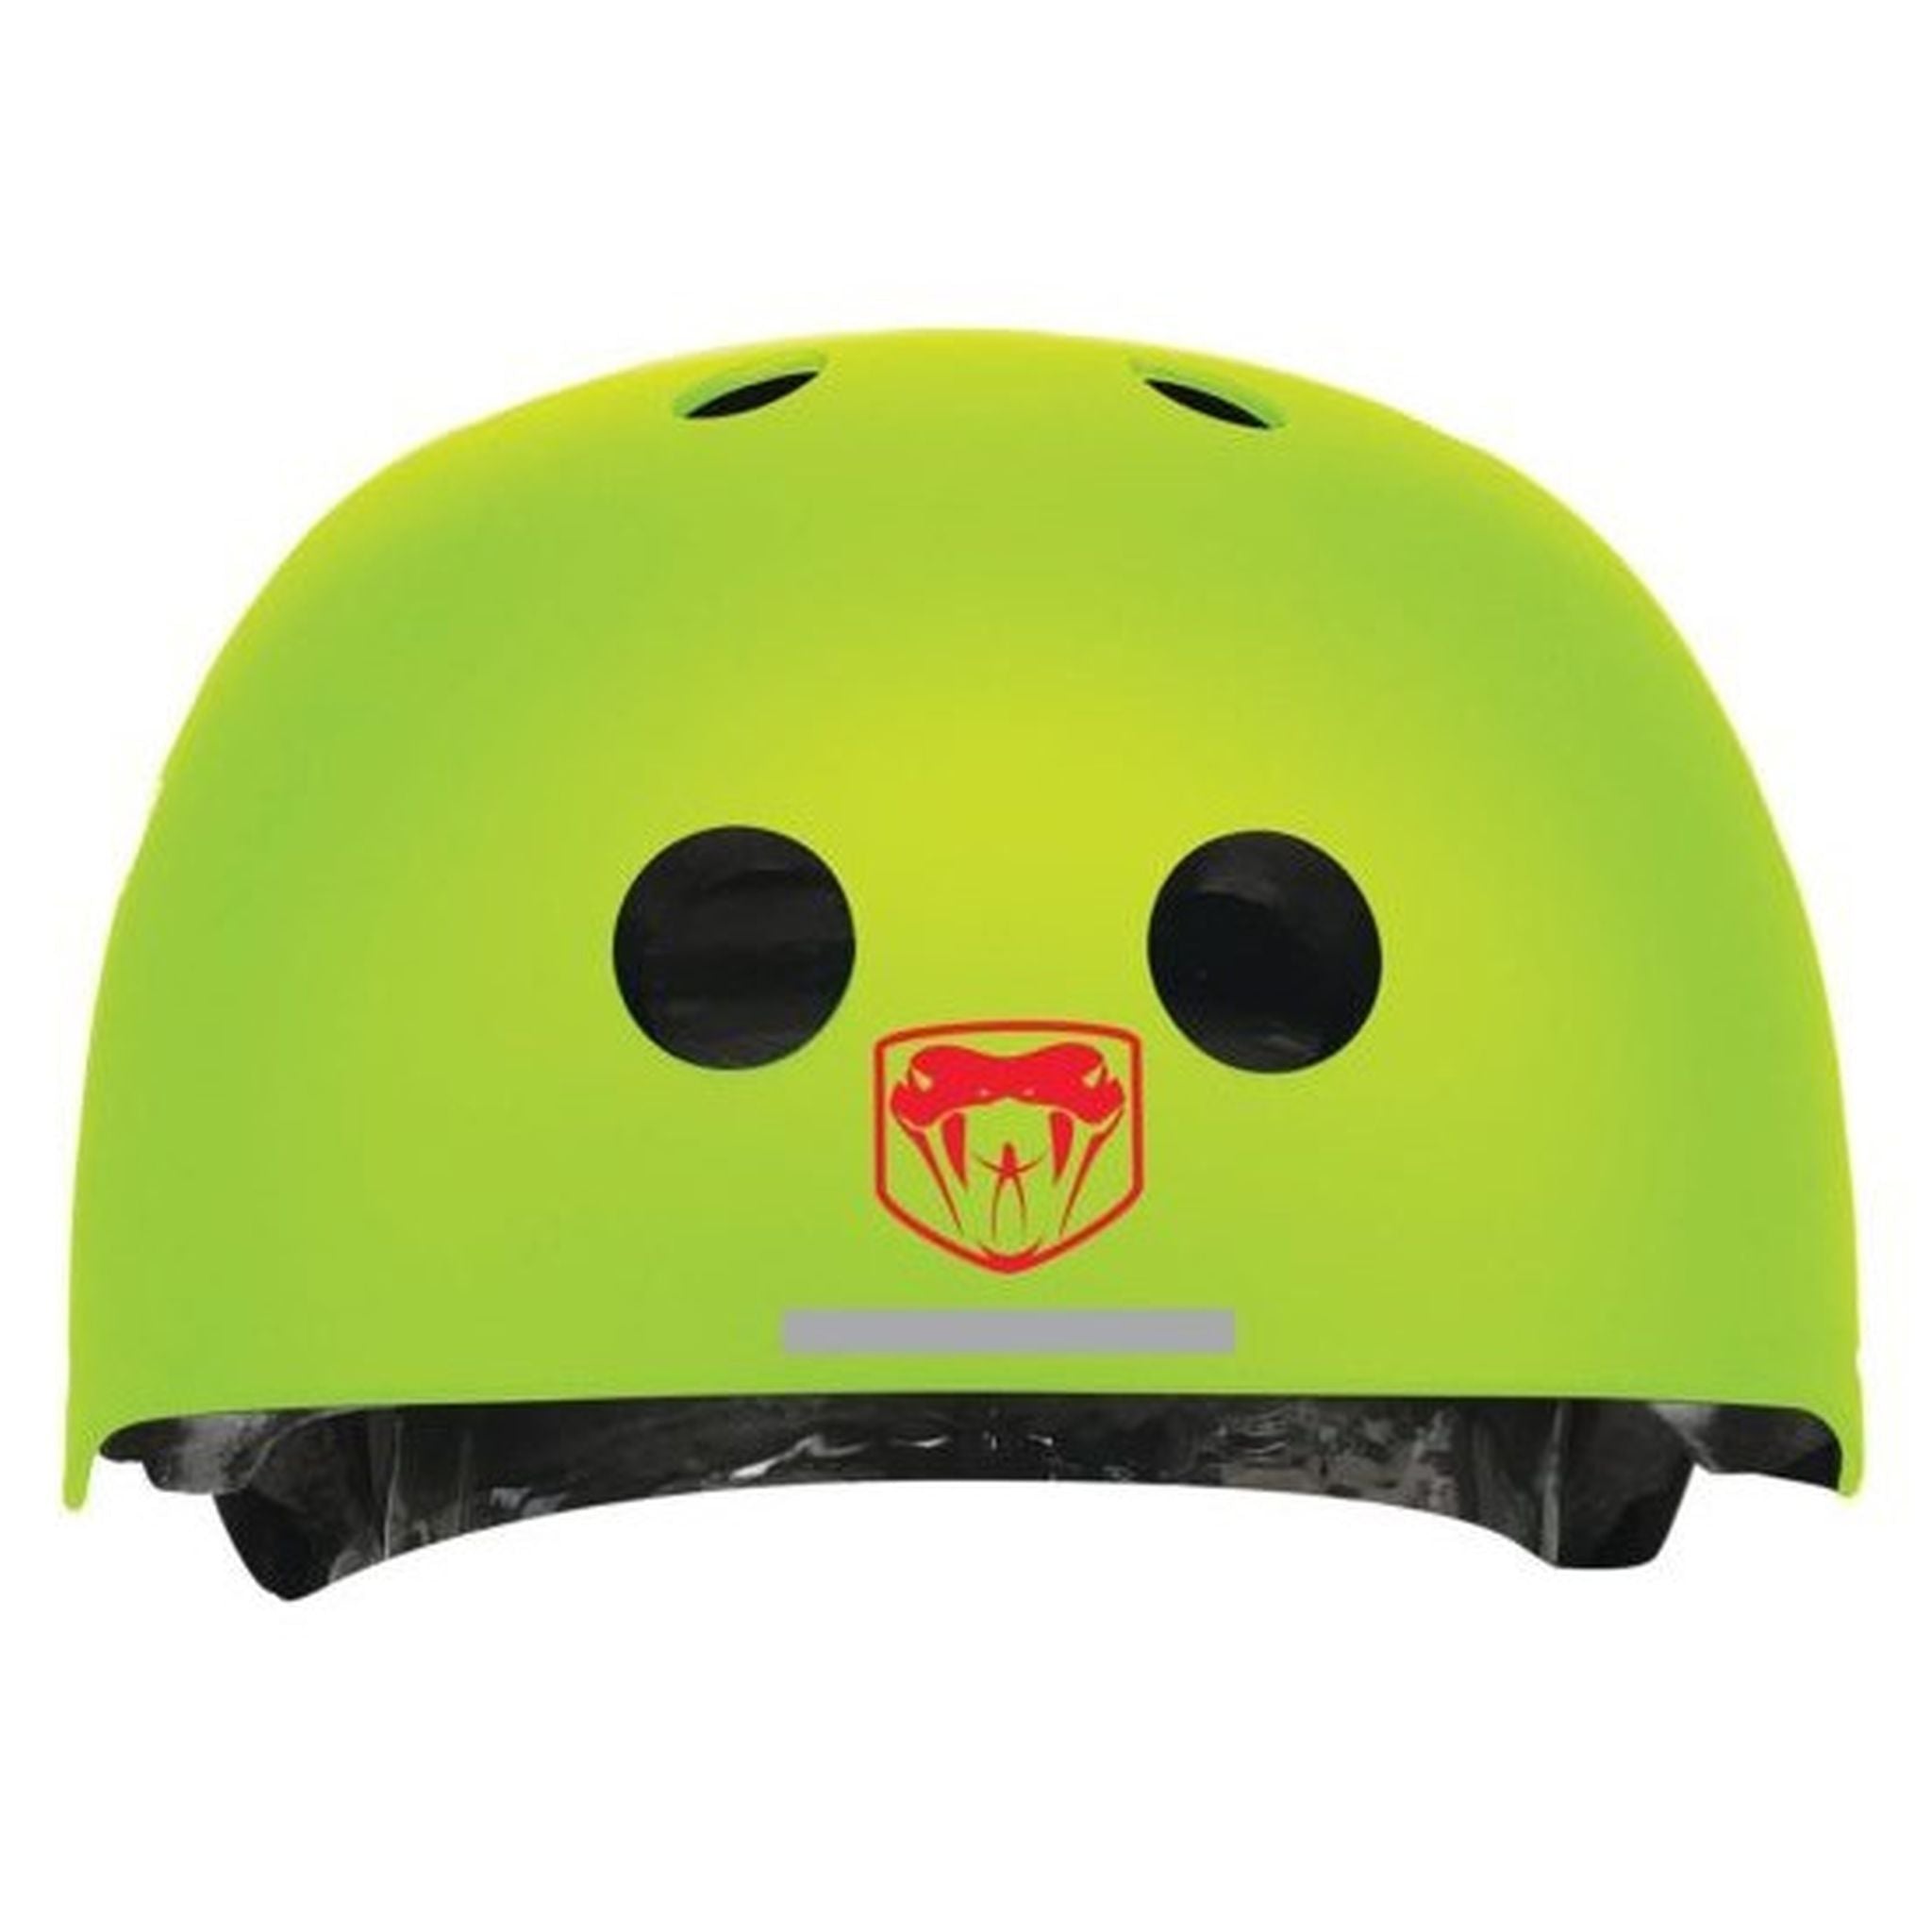 Adrenalin Cross Sports Pro Adjustable Helmet